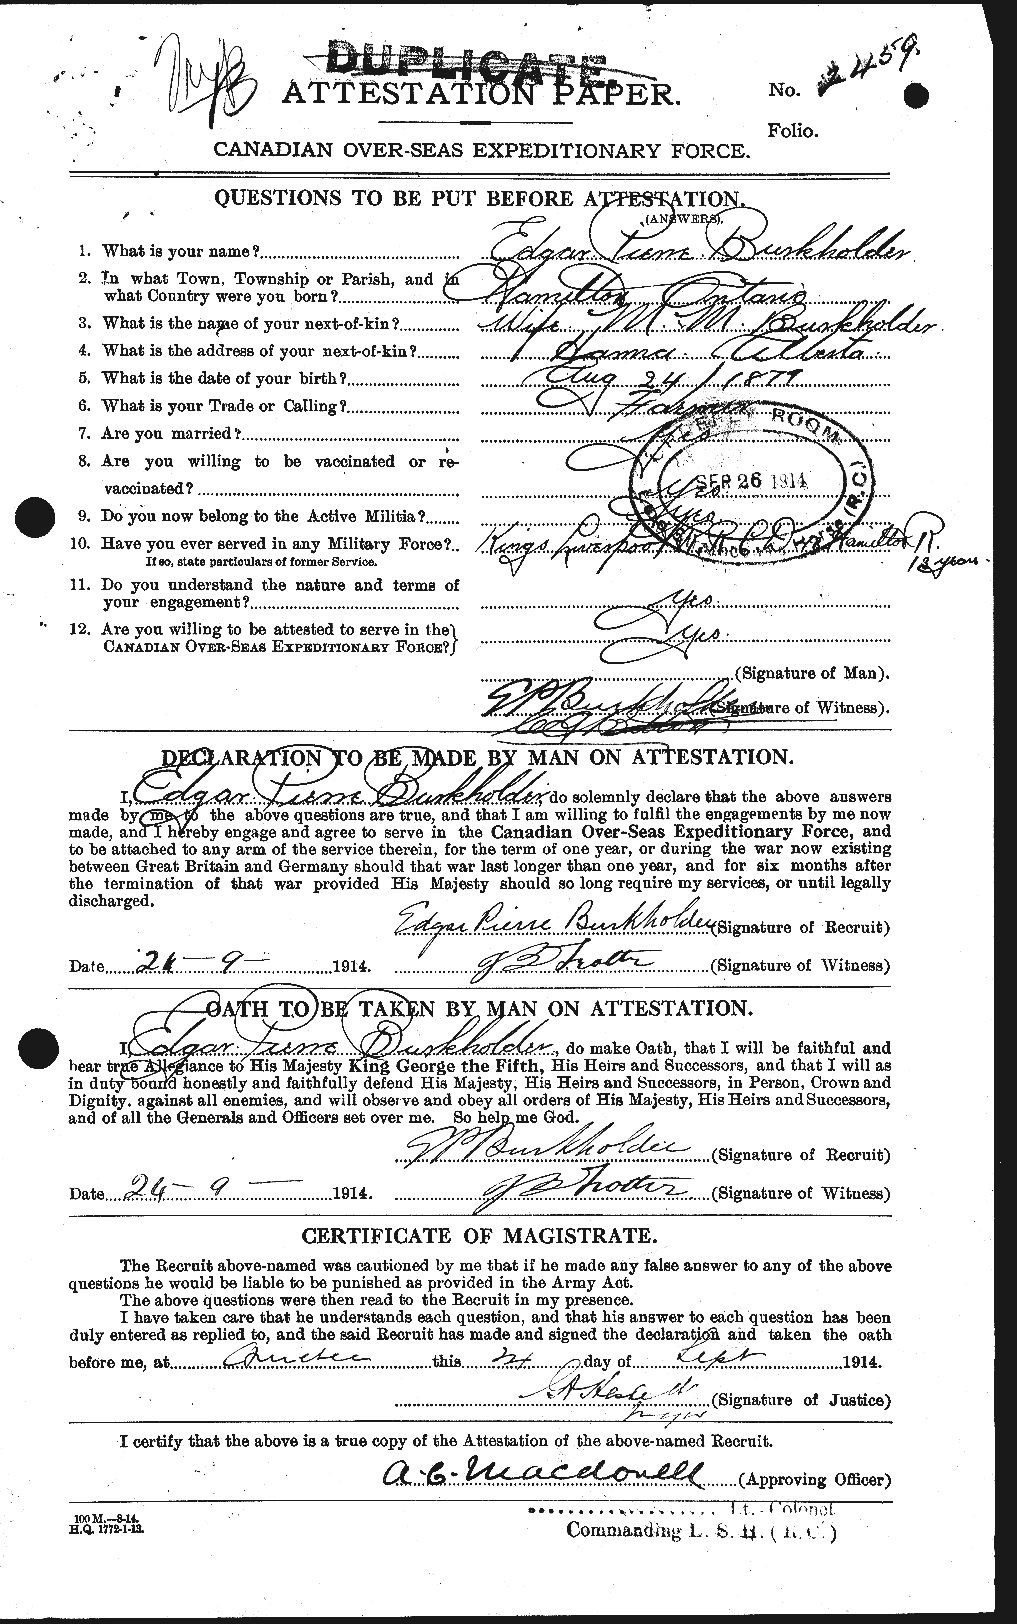 Dossiers du Personnel de la Première Guerre mondiale - CEC 278570a